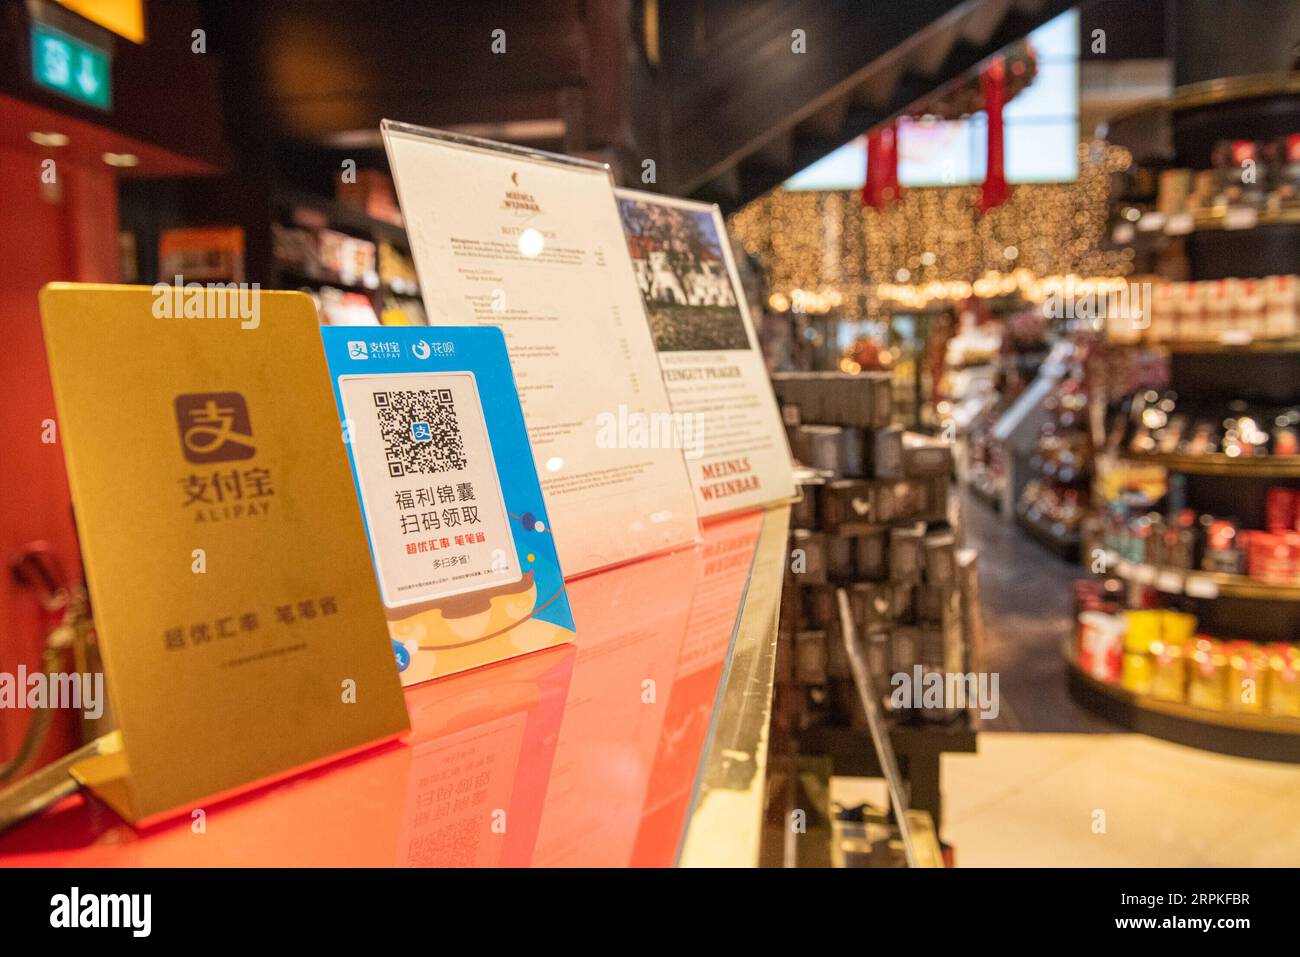 200109 -- VIENNE, le 9 janvier 2020 -- Un panneau indiquant le paiement par Alipay est affiché à un comptoir de caisse de Julius Meinl, un café de Vienne, en Autriche, le 9 janvier 2020. La société chinoise de paiement mobile Alipay a démarré ses activités à Vienne en 2018. Après deux ans de développement, les paiements avec Alipay ont été disponibles dans de nombreux magasins à Vienne, permettant au nombre croissant de visiteurs chinois d'utiliser le paiement mobile ici. AUTRICHE-VIENNE-CHINE-ALIPAY GuoxChen PUBLICATIONxNOTxINxCHN Banque D'Images